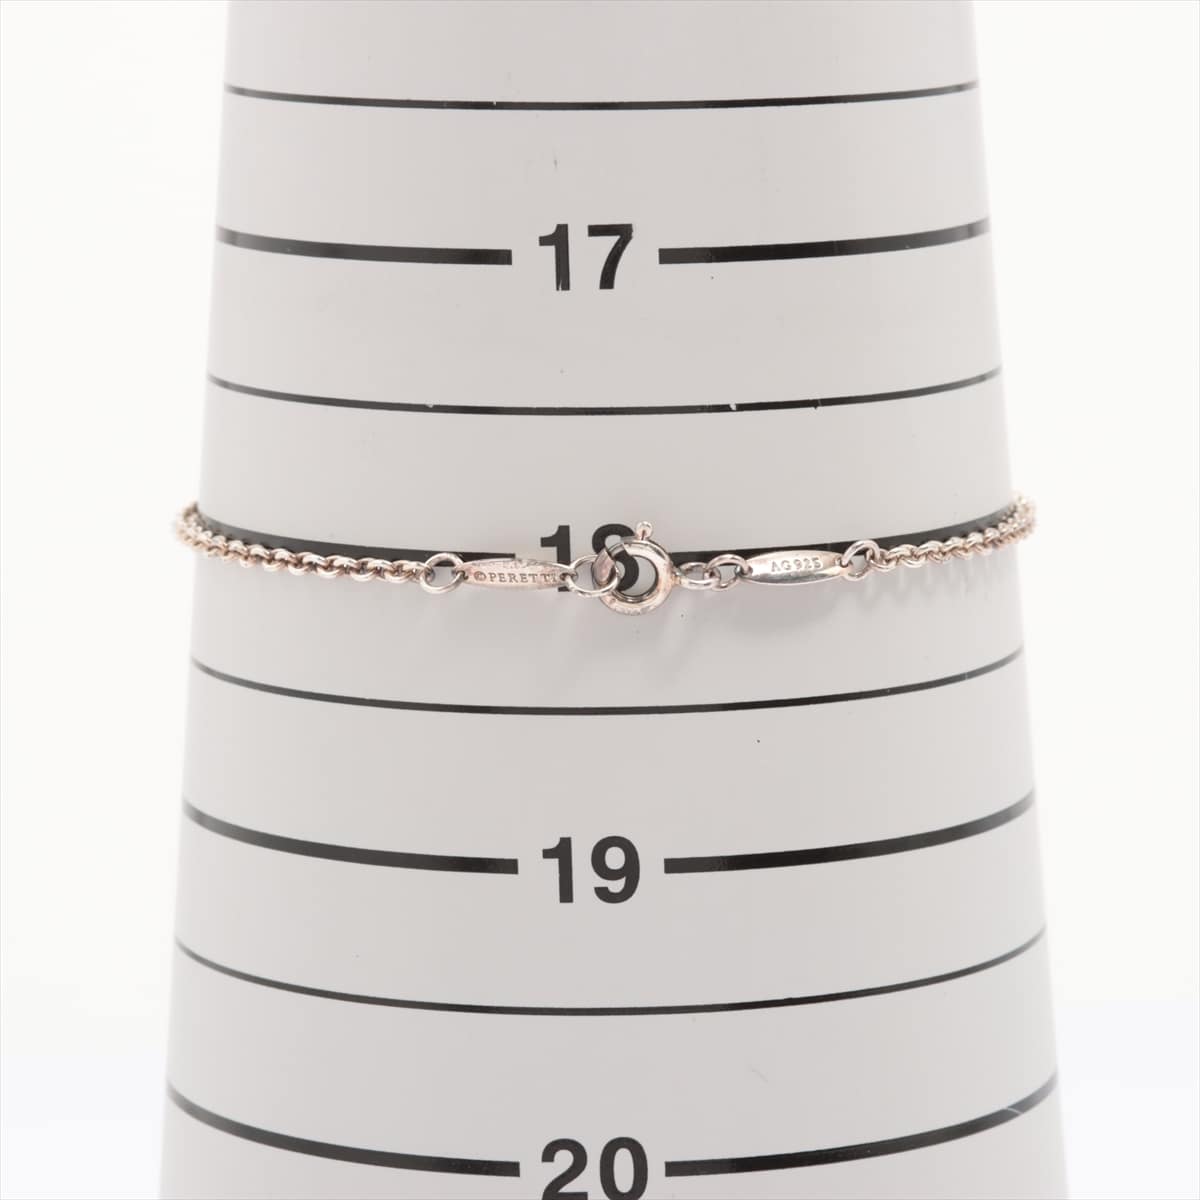 Tiffany Open Heart Bracelet 925 2.6g Silver